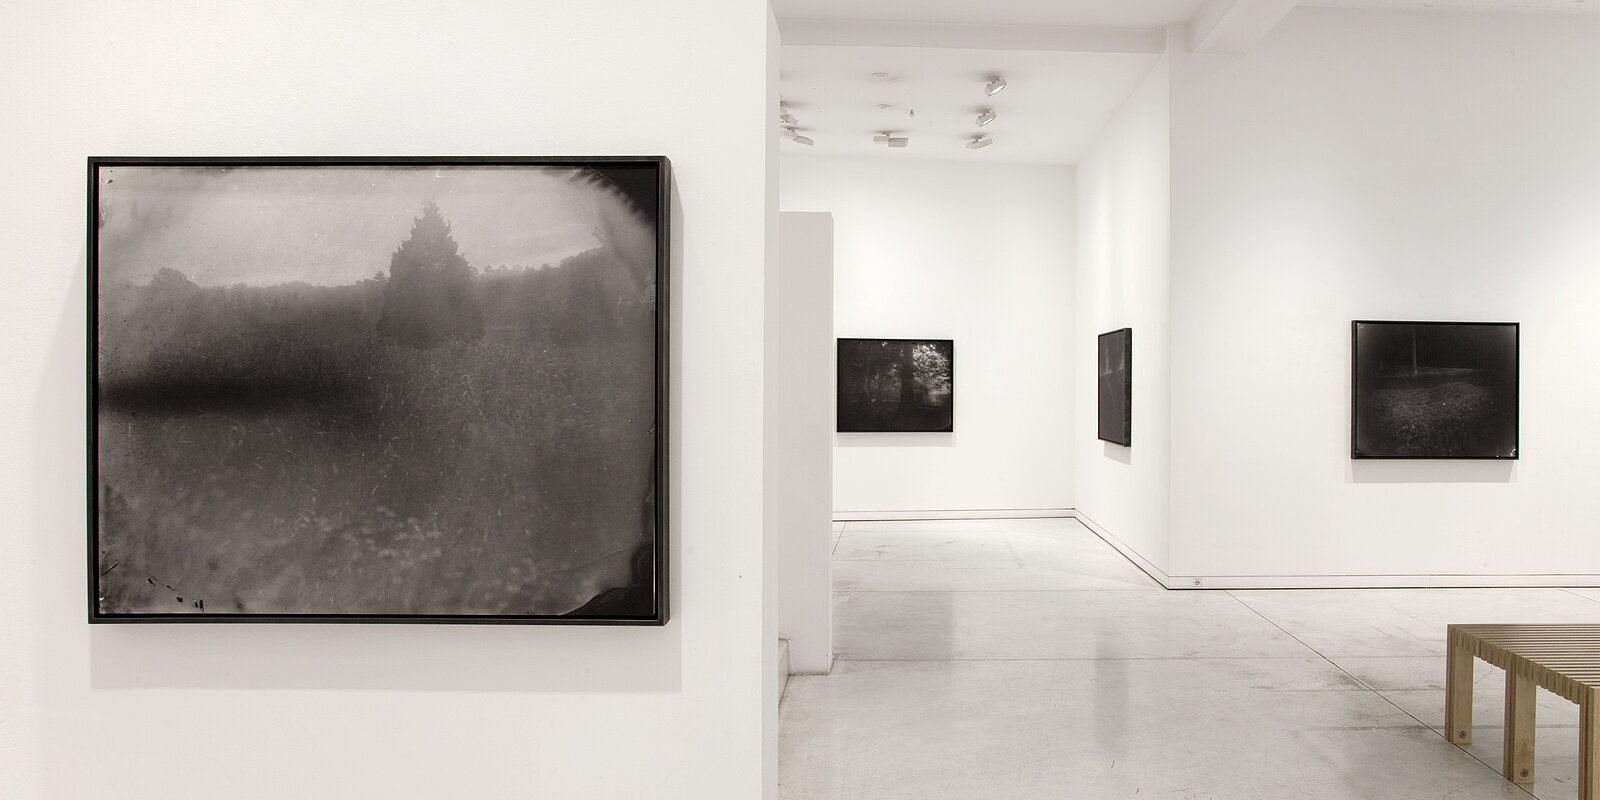 Vue d'installation, Sally Mann, Galerie Karsten Greve Cologne, 2020. Photo: Lisa Busche